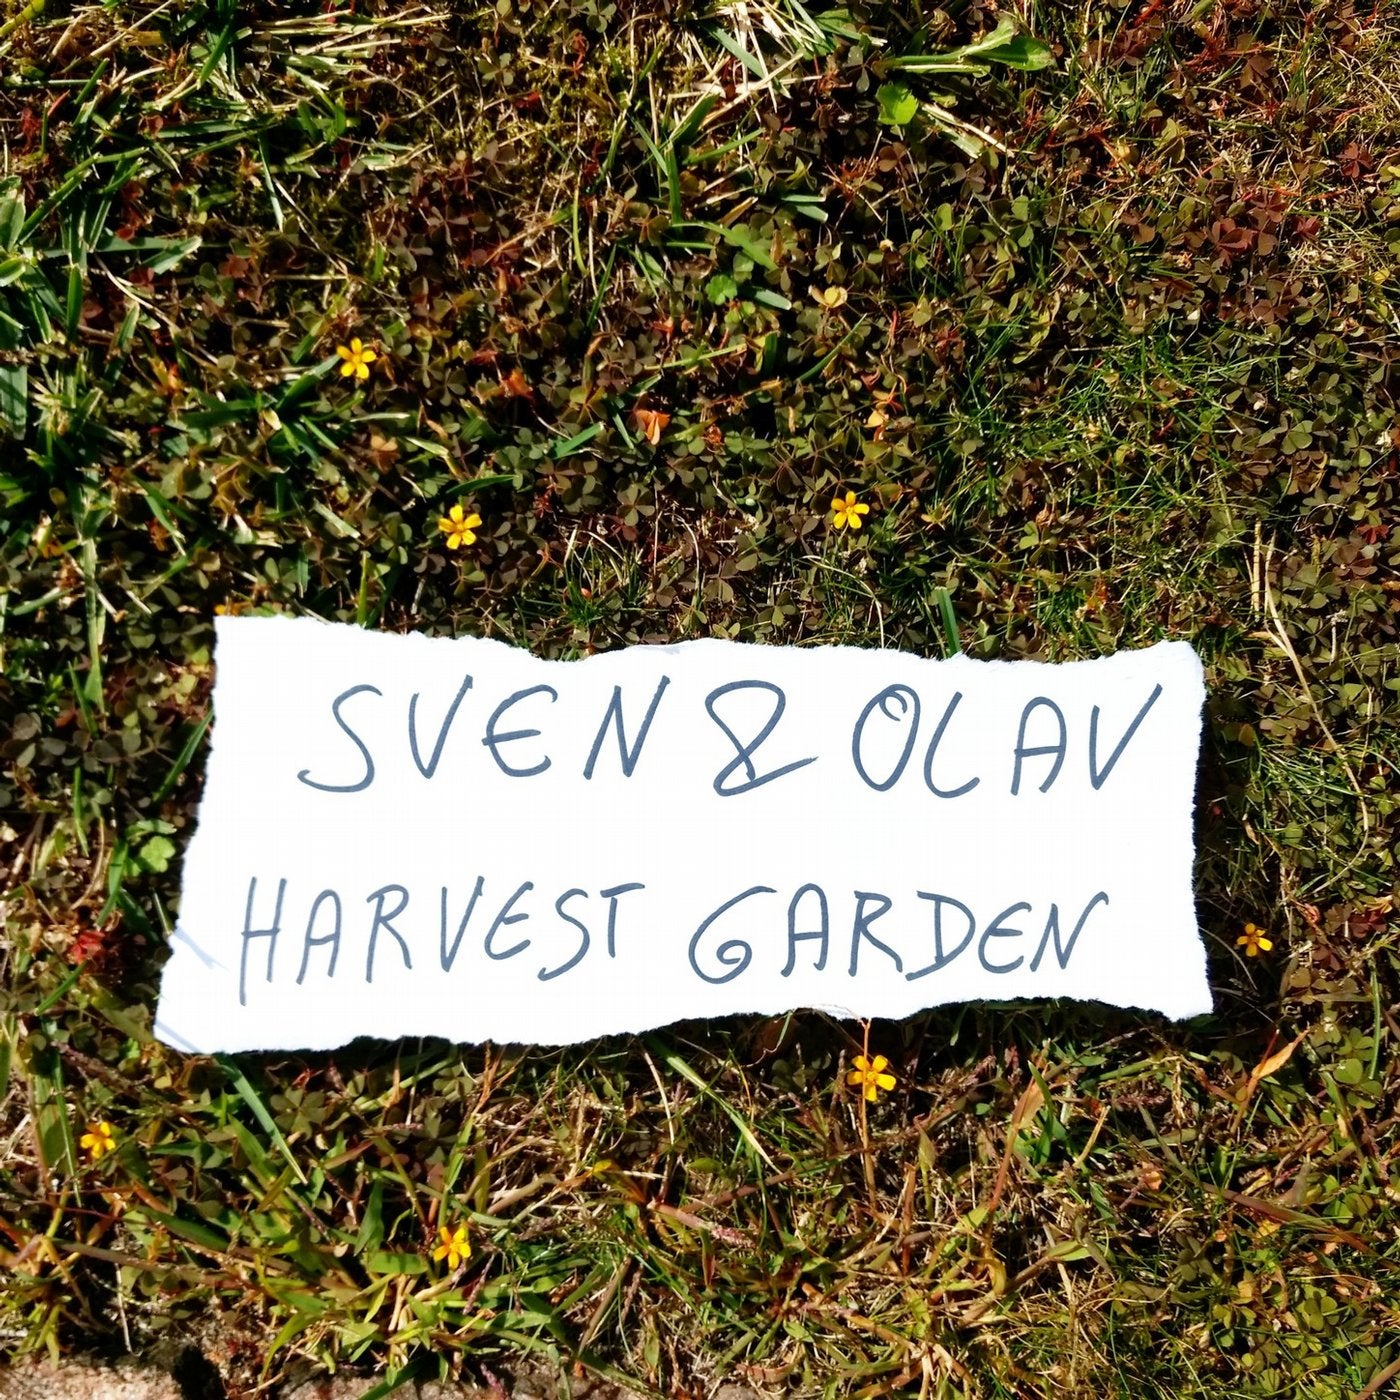 Harvest Garden